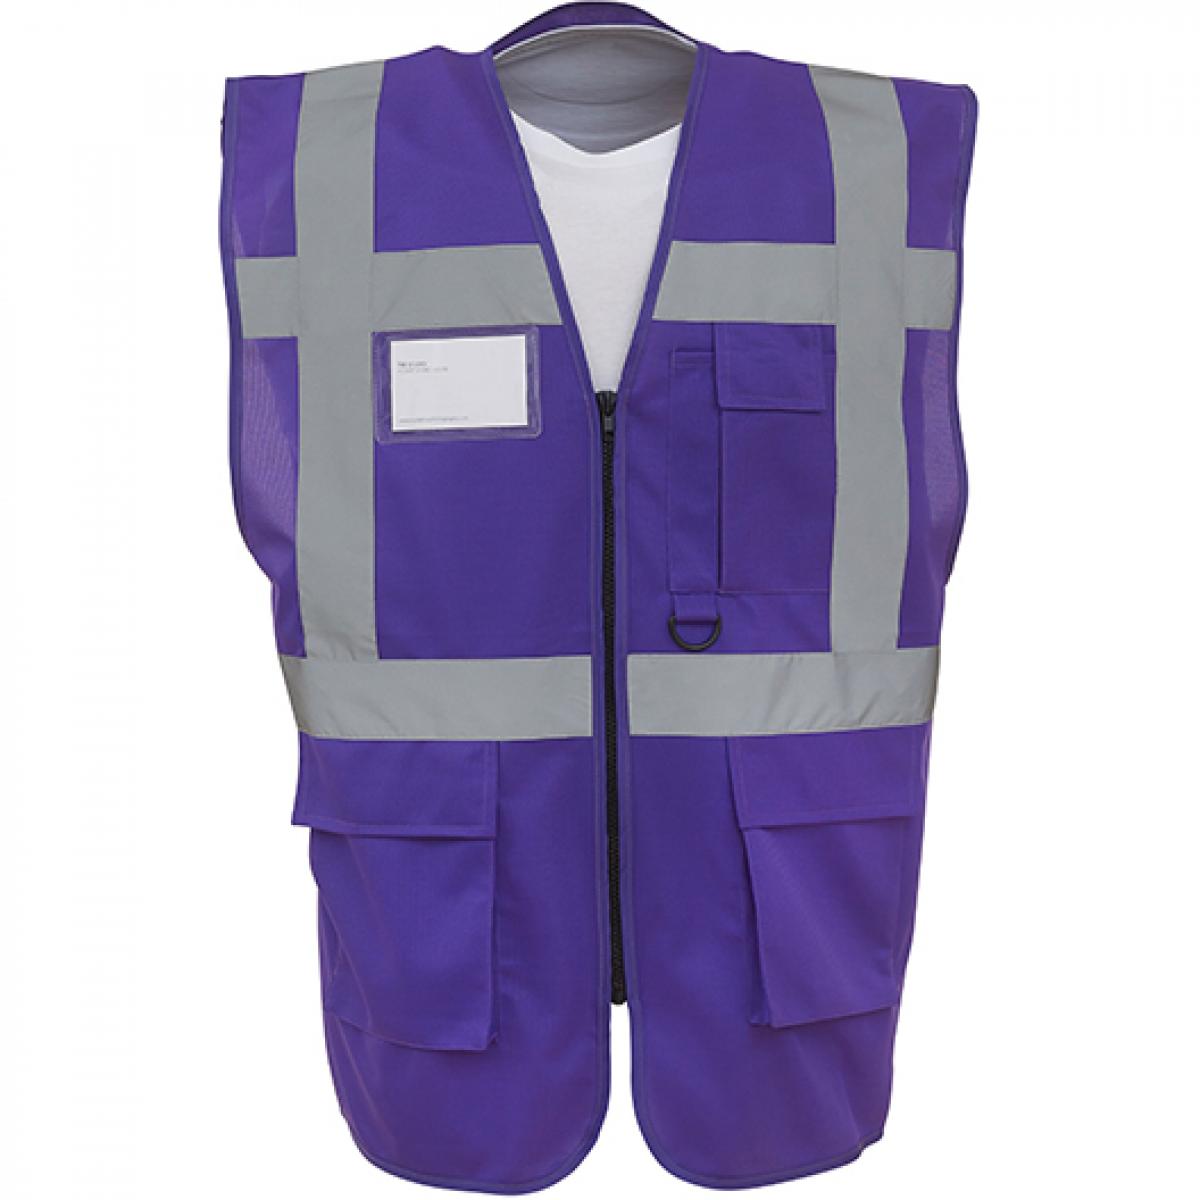 Hersteller: YOKO Herstellernummer: HVW801 Artikelbezeichnung: Herren Multi-Functional Executive Waistcoat Farbe: Purple